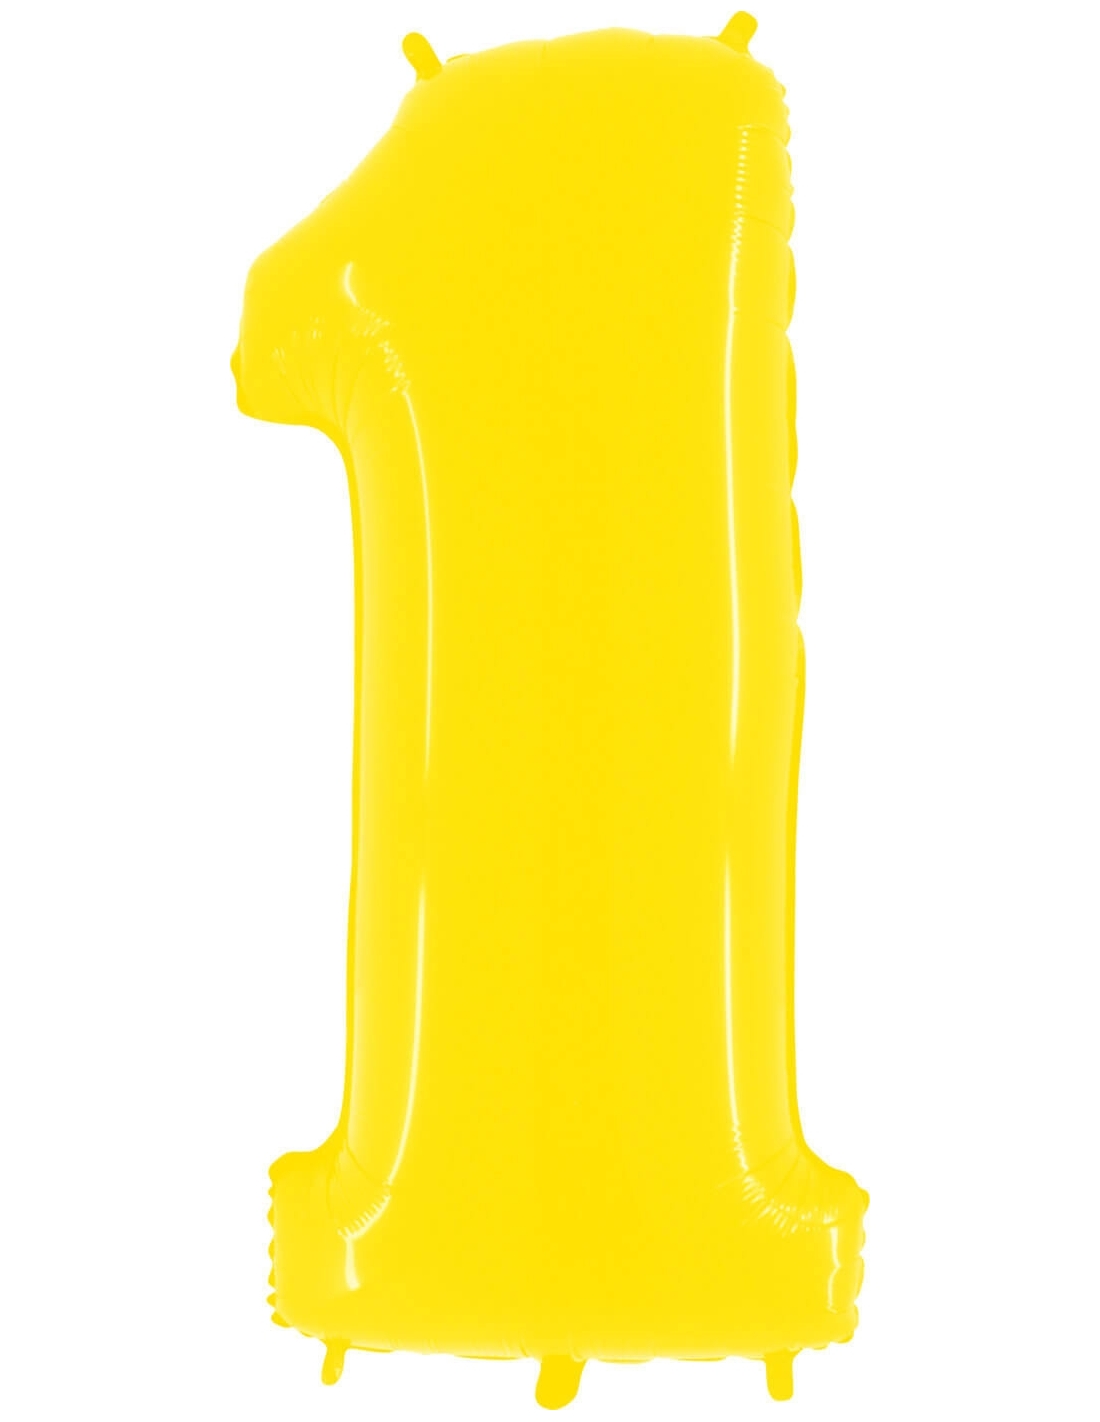 Globos de Helio Numero 1 de 100cm Amarillo Neon Gigante G941WY